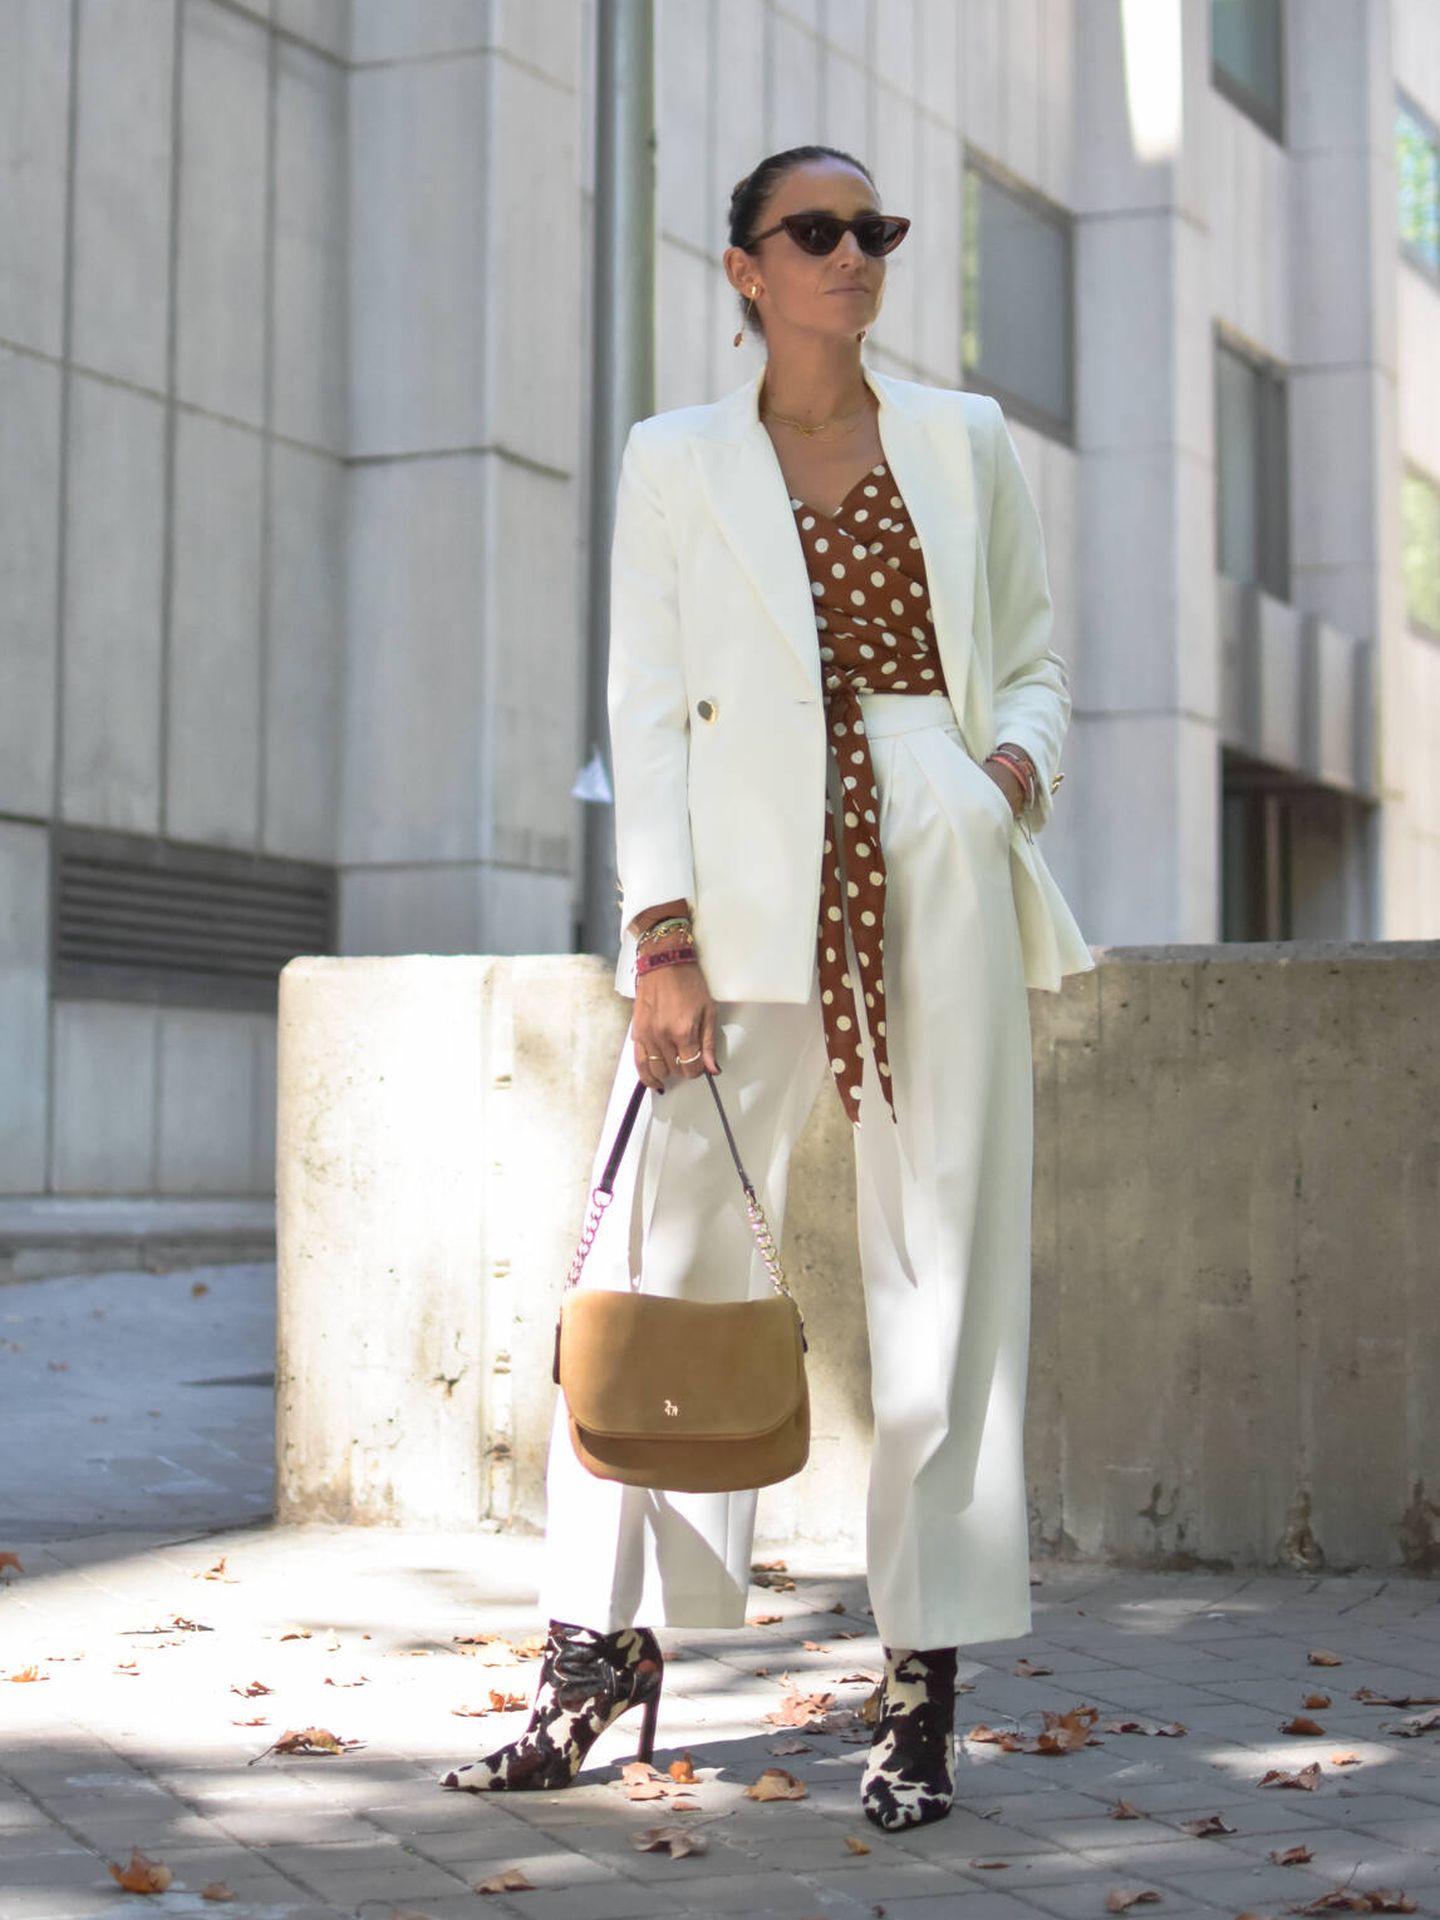 La influencer Silvia Rodríguez con traje de chaqueta blanco y botines. (Instagram @elblogdesilvia)